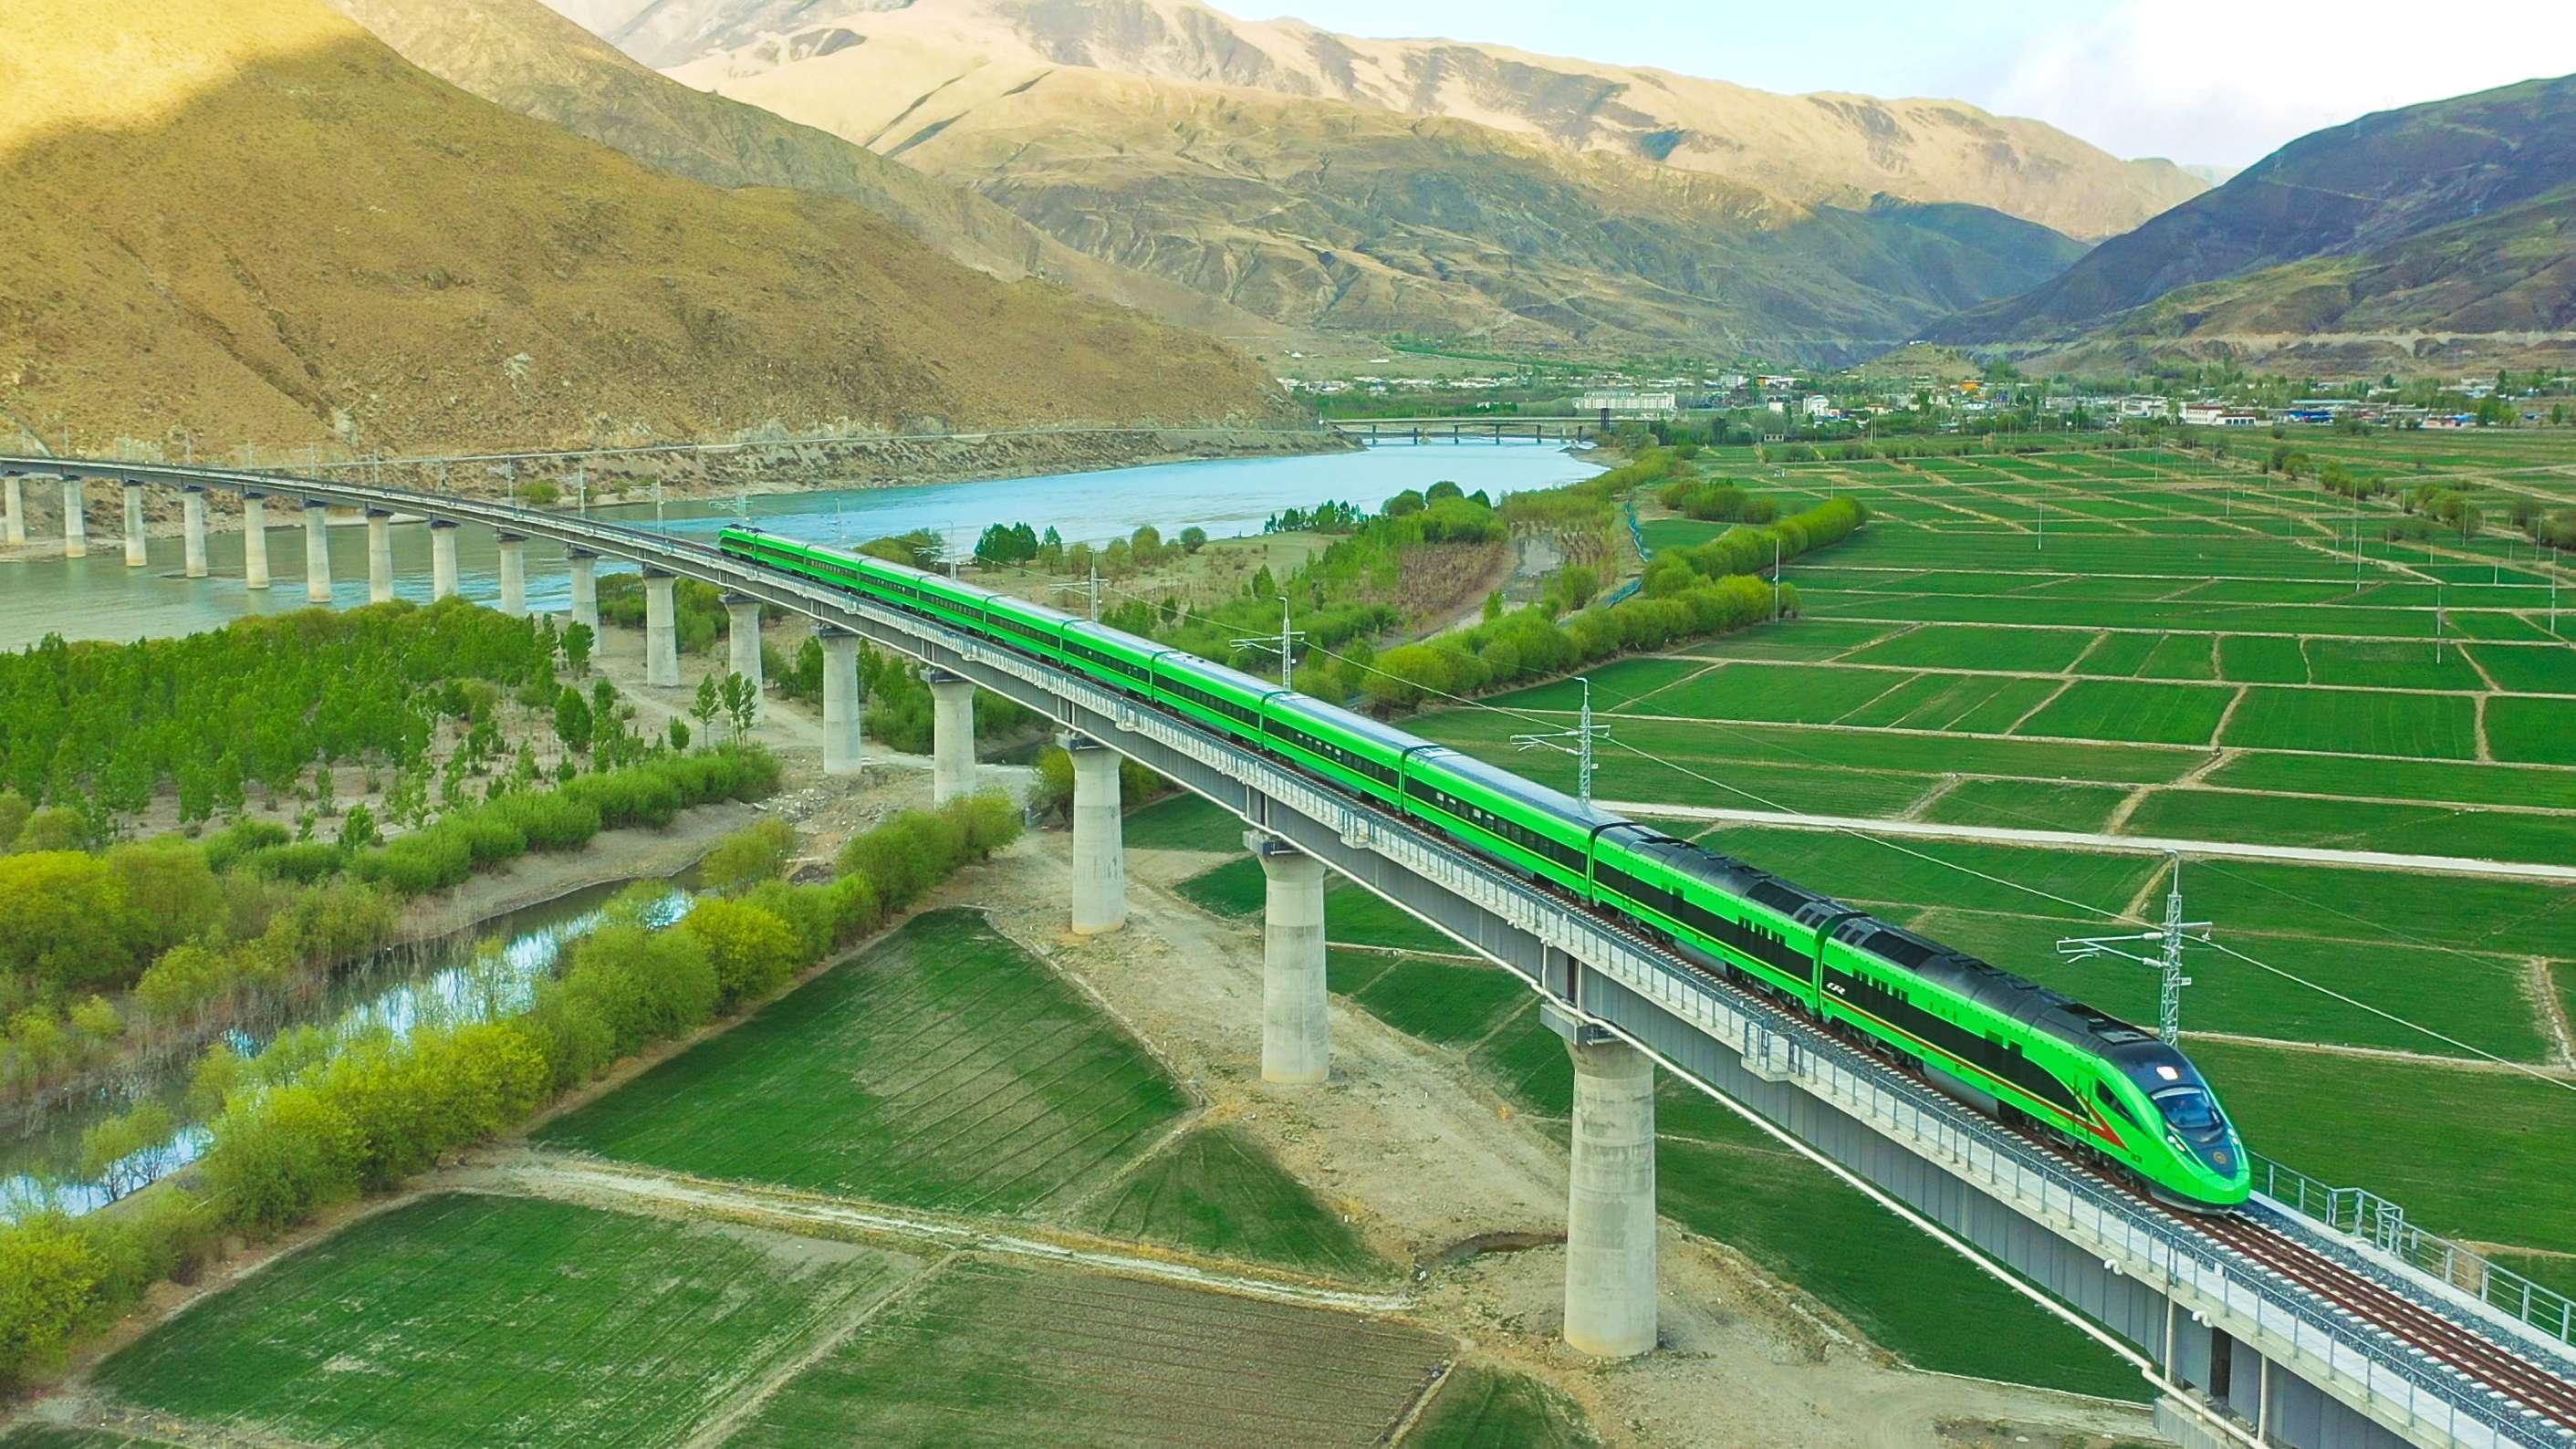 西藏最美铁路,拉萨到林芝只需3小时,欣赏沿途435公里视觉盛宴